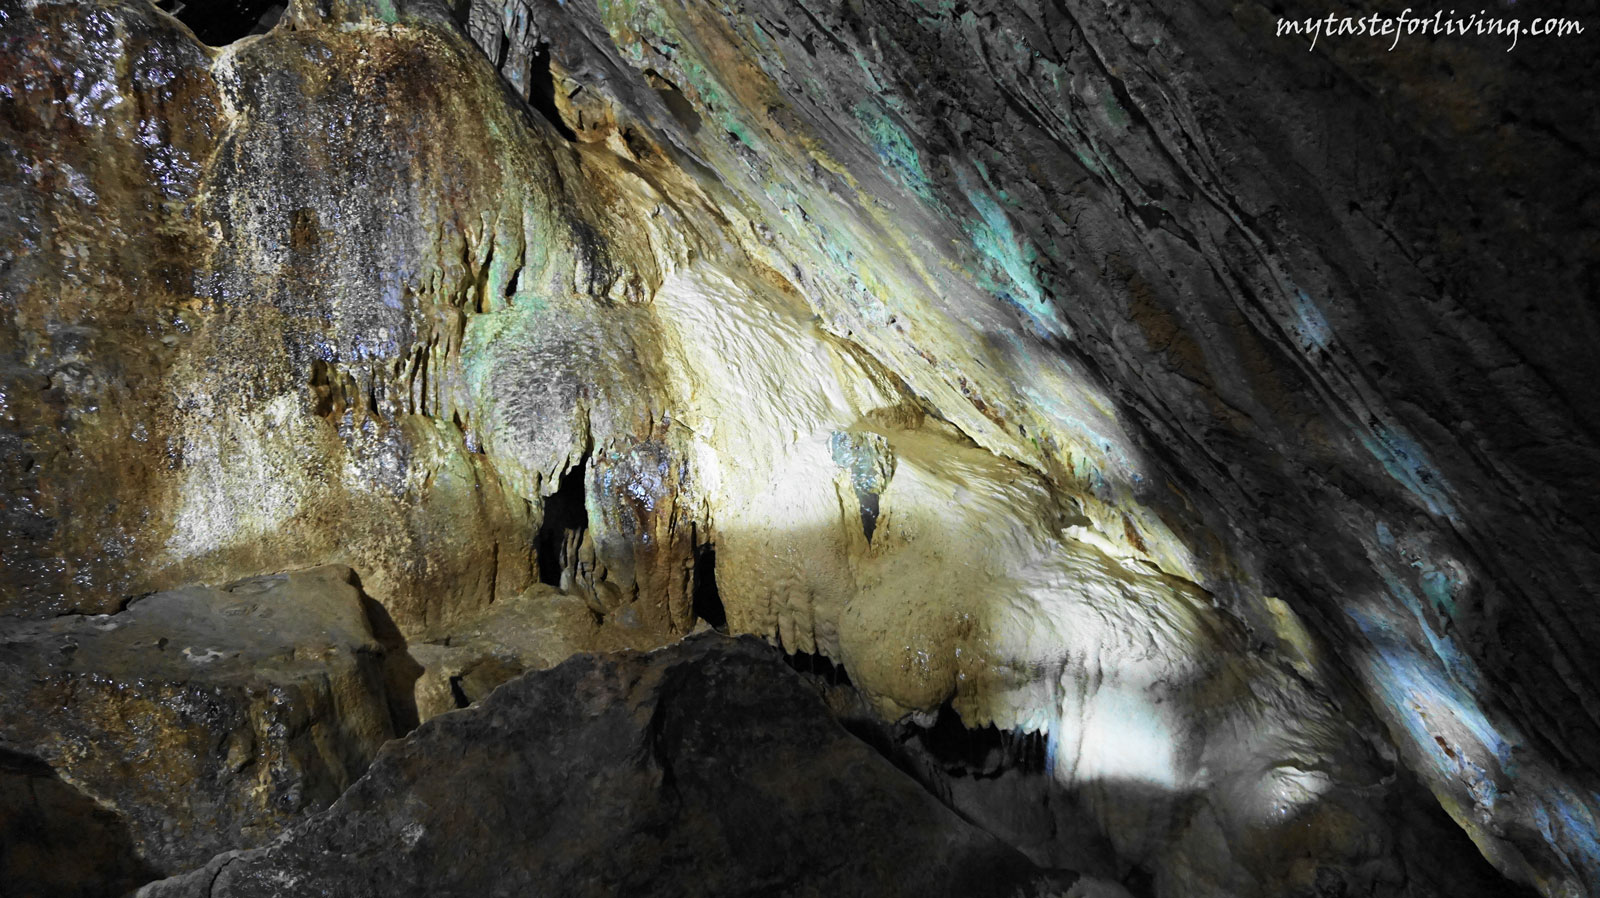 Планина Бучеджи е съставена от изключително голямо разнообразие на скални образувания, на които може да се насладите. Пещера Яломица (Peștera Ialomiței) е едно от тях. Тя се намира в сърцето на планина Бучеджи, община Мороени, Румъния, на около 30 км от град Синая.  